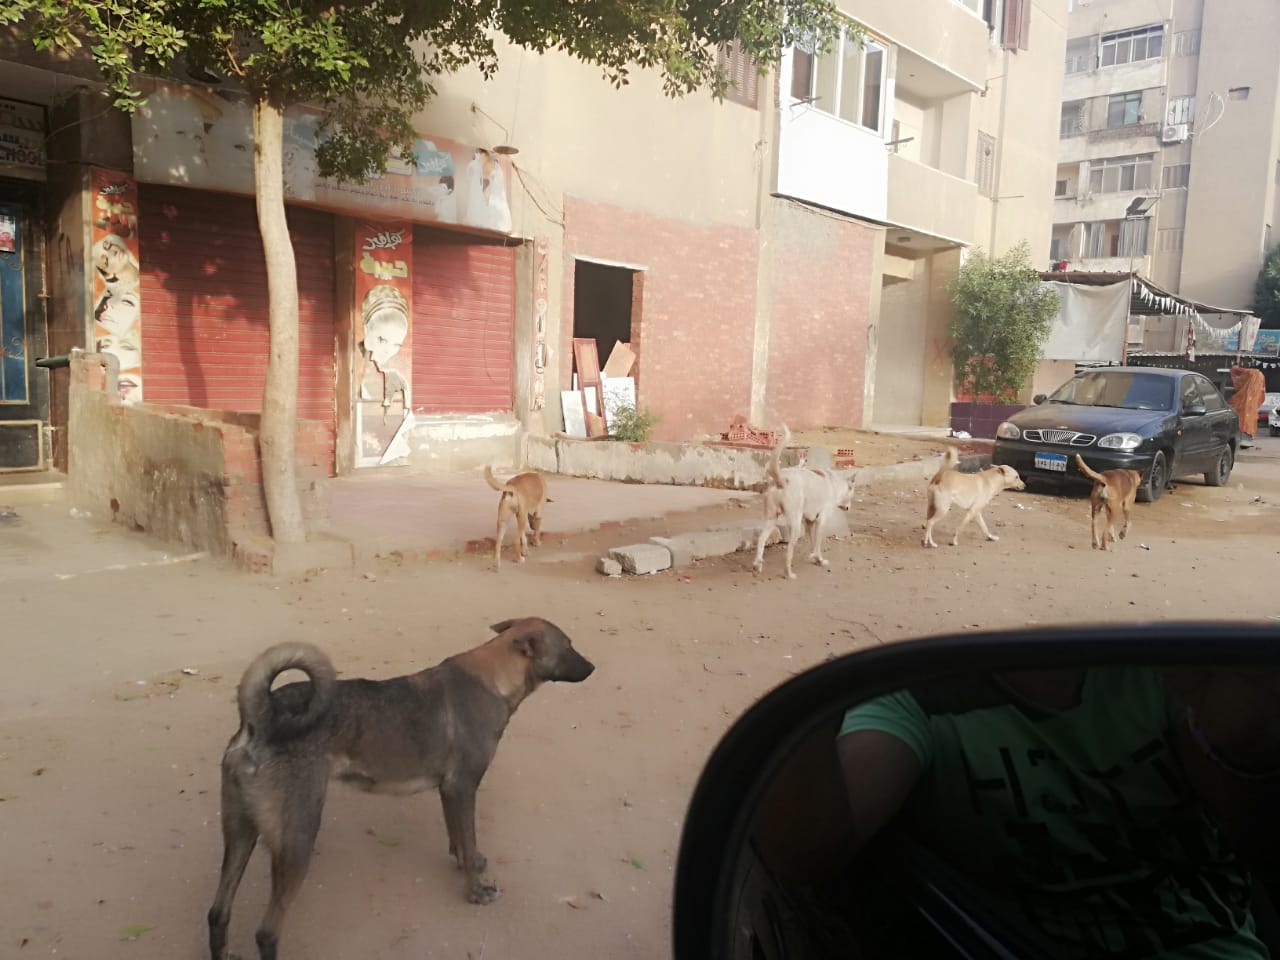  انتشار الكلاب الضالة بشوارع صقر قريش فى مدينة نصر  (4)